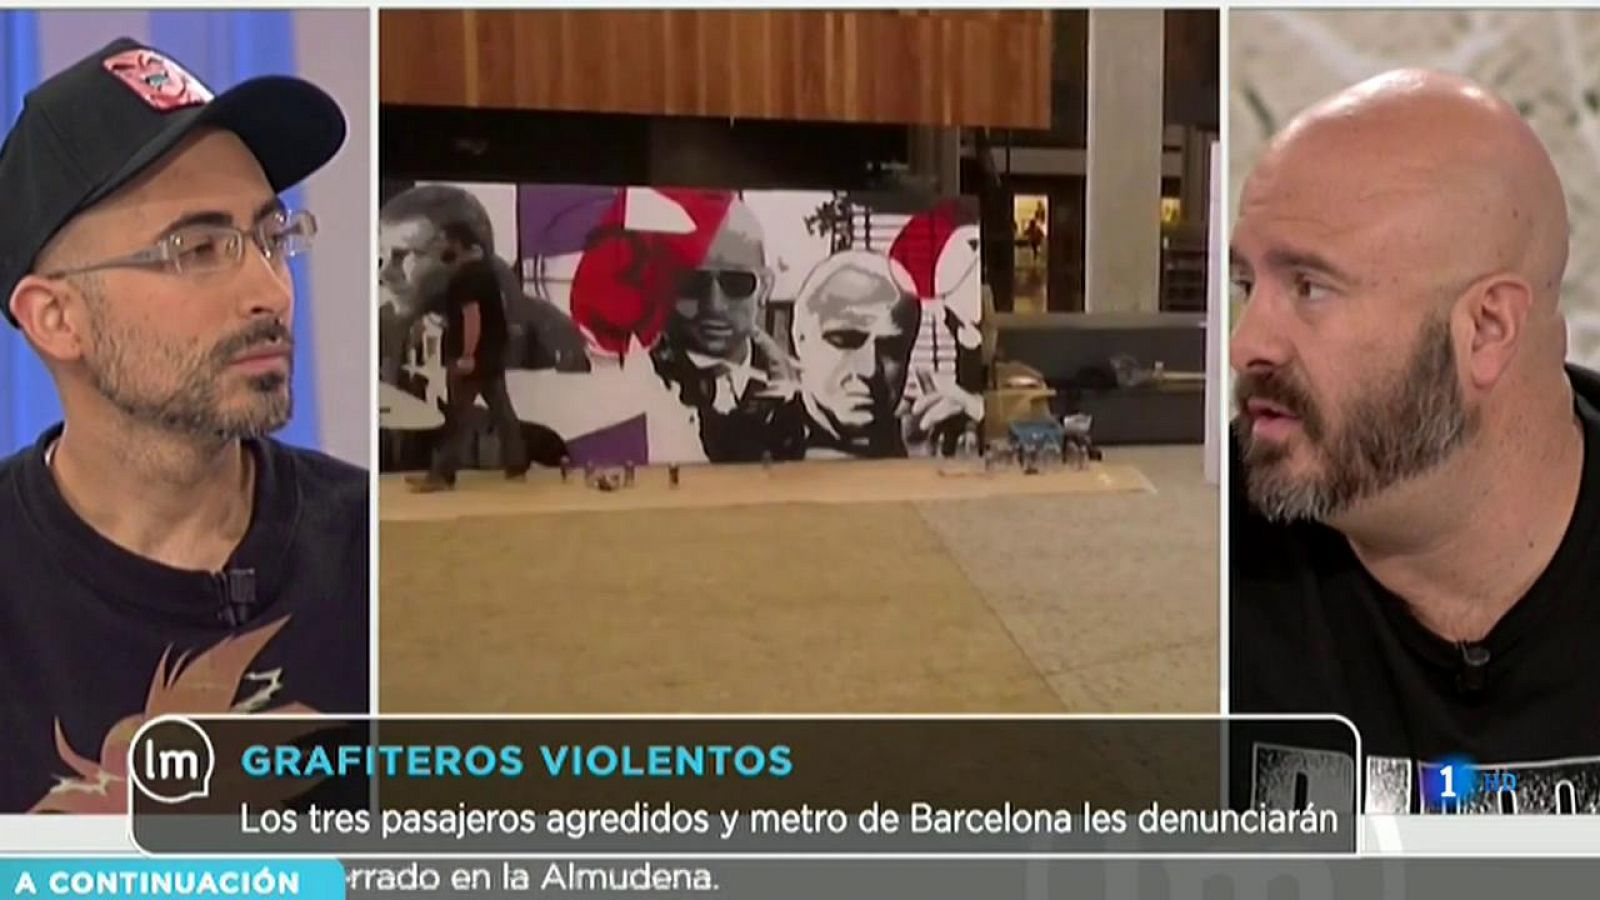 La Mañana - Varios grafiteros agreden a viandantes en el metro de Barcelona